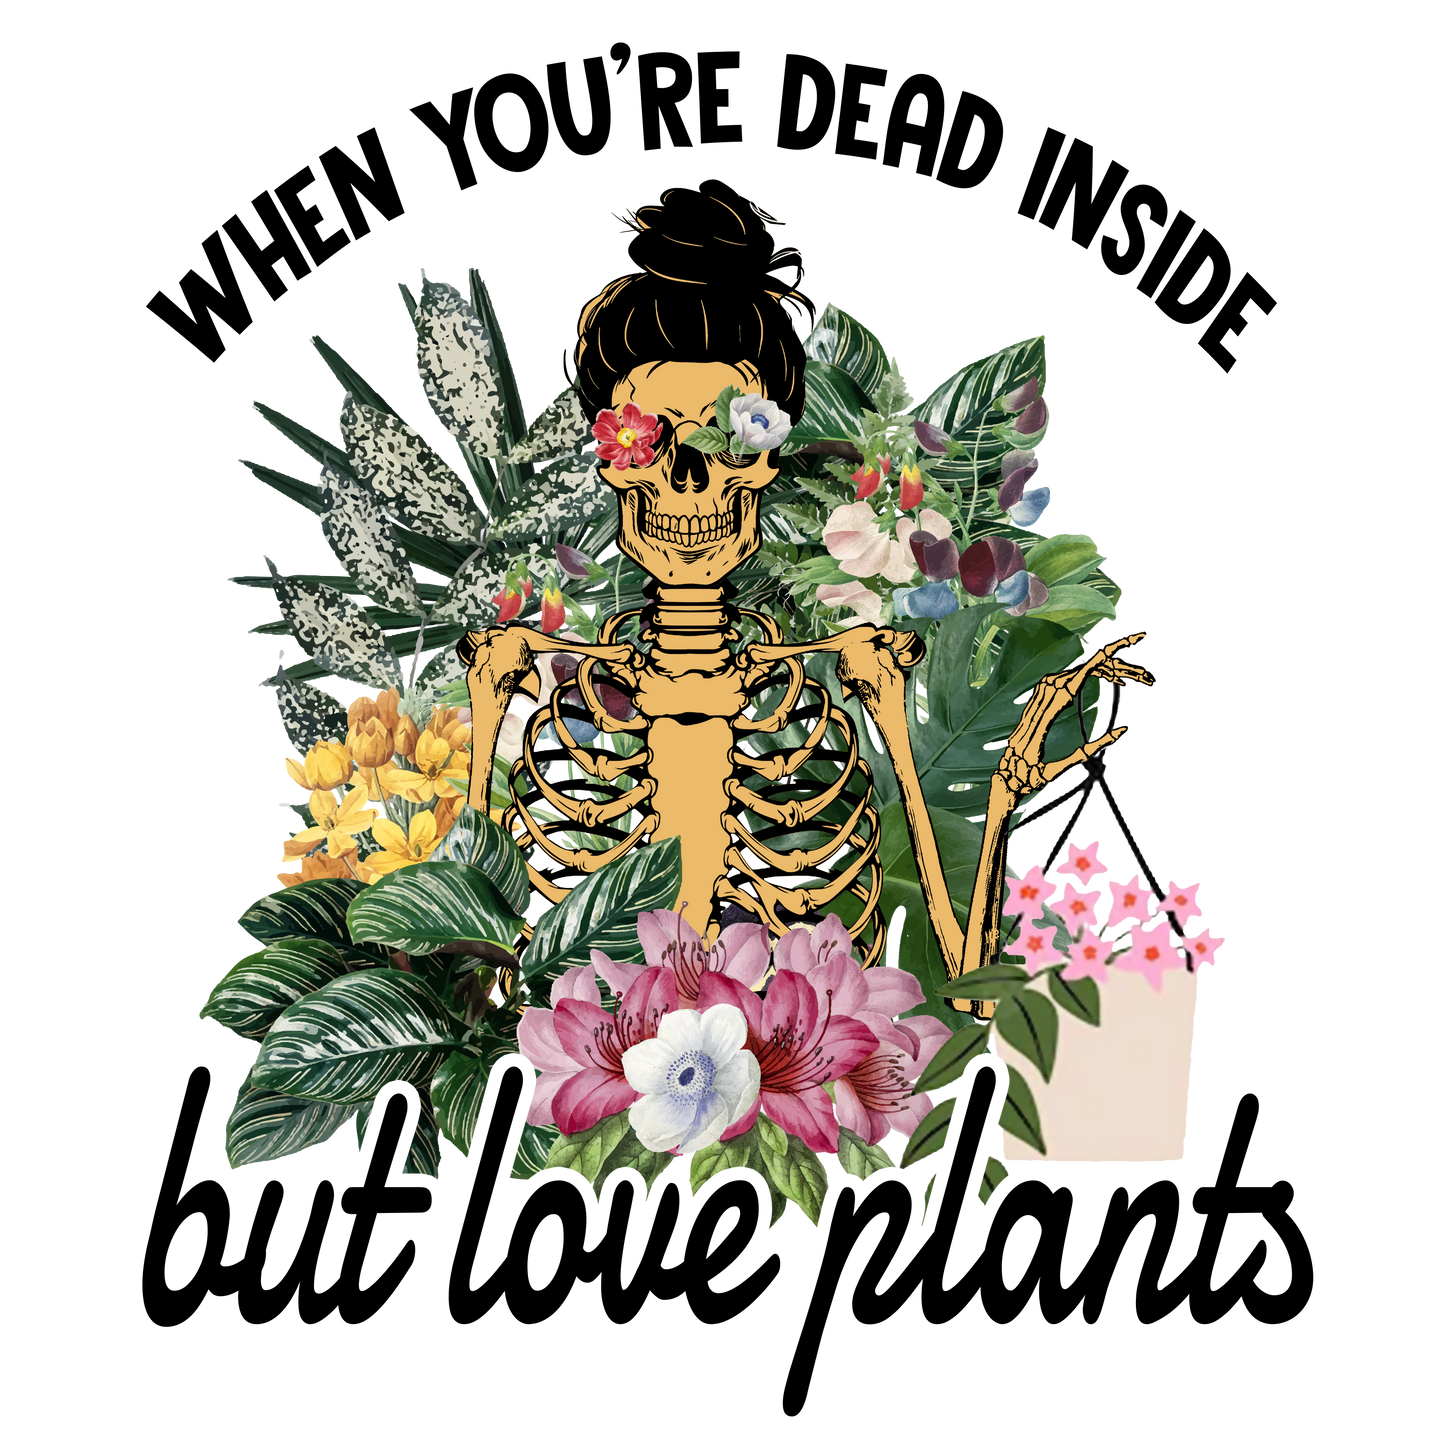 WHEN YOU'RE DEAD INSIDE BUT LOVE PLANTS